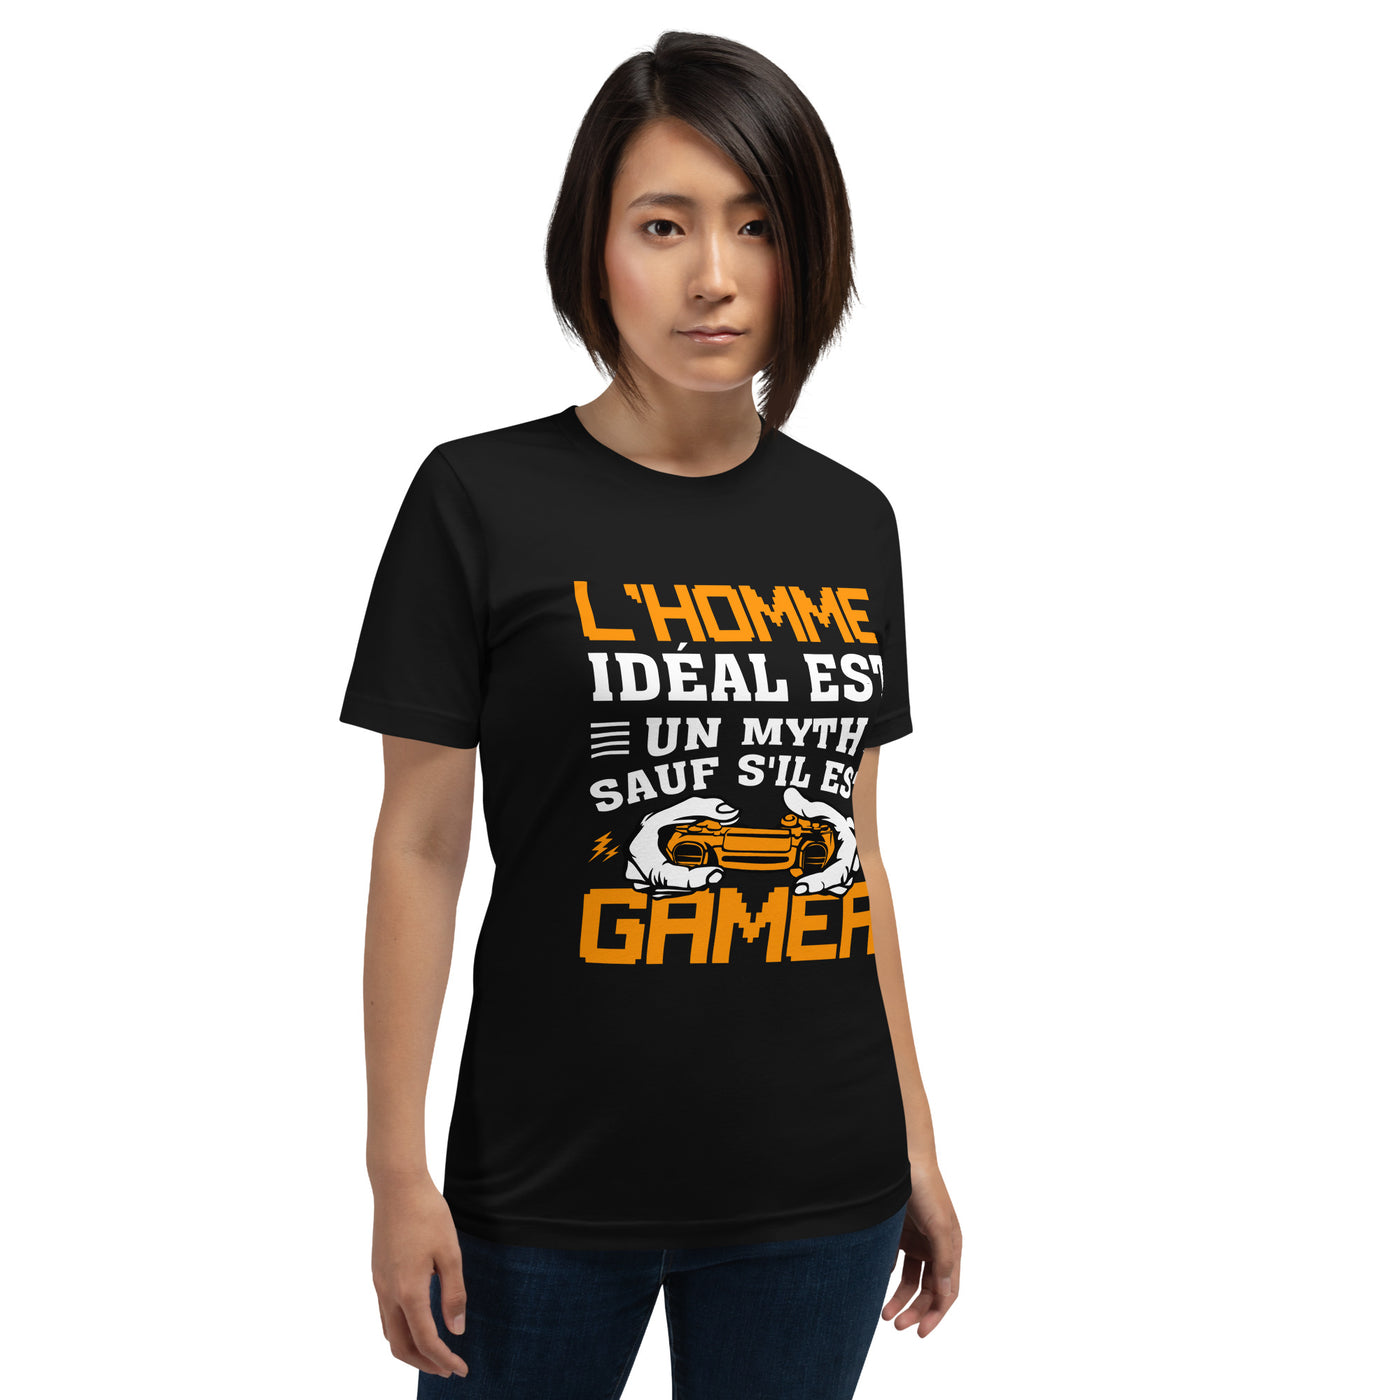 L'HOMME IDEAL EST UN MYTH SAUT SILEST GAMER - Unisex t-shirt